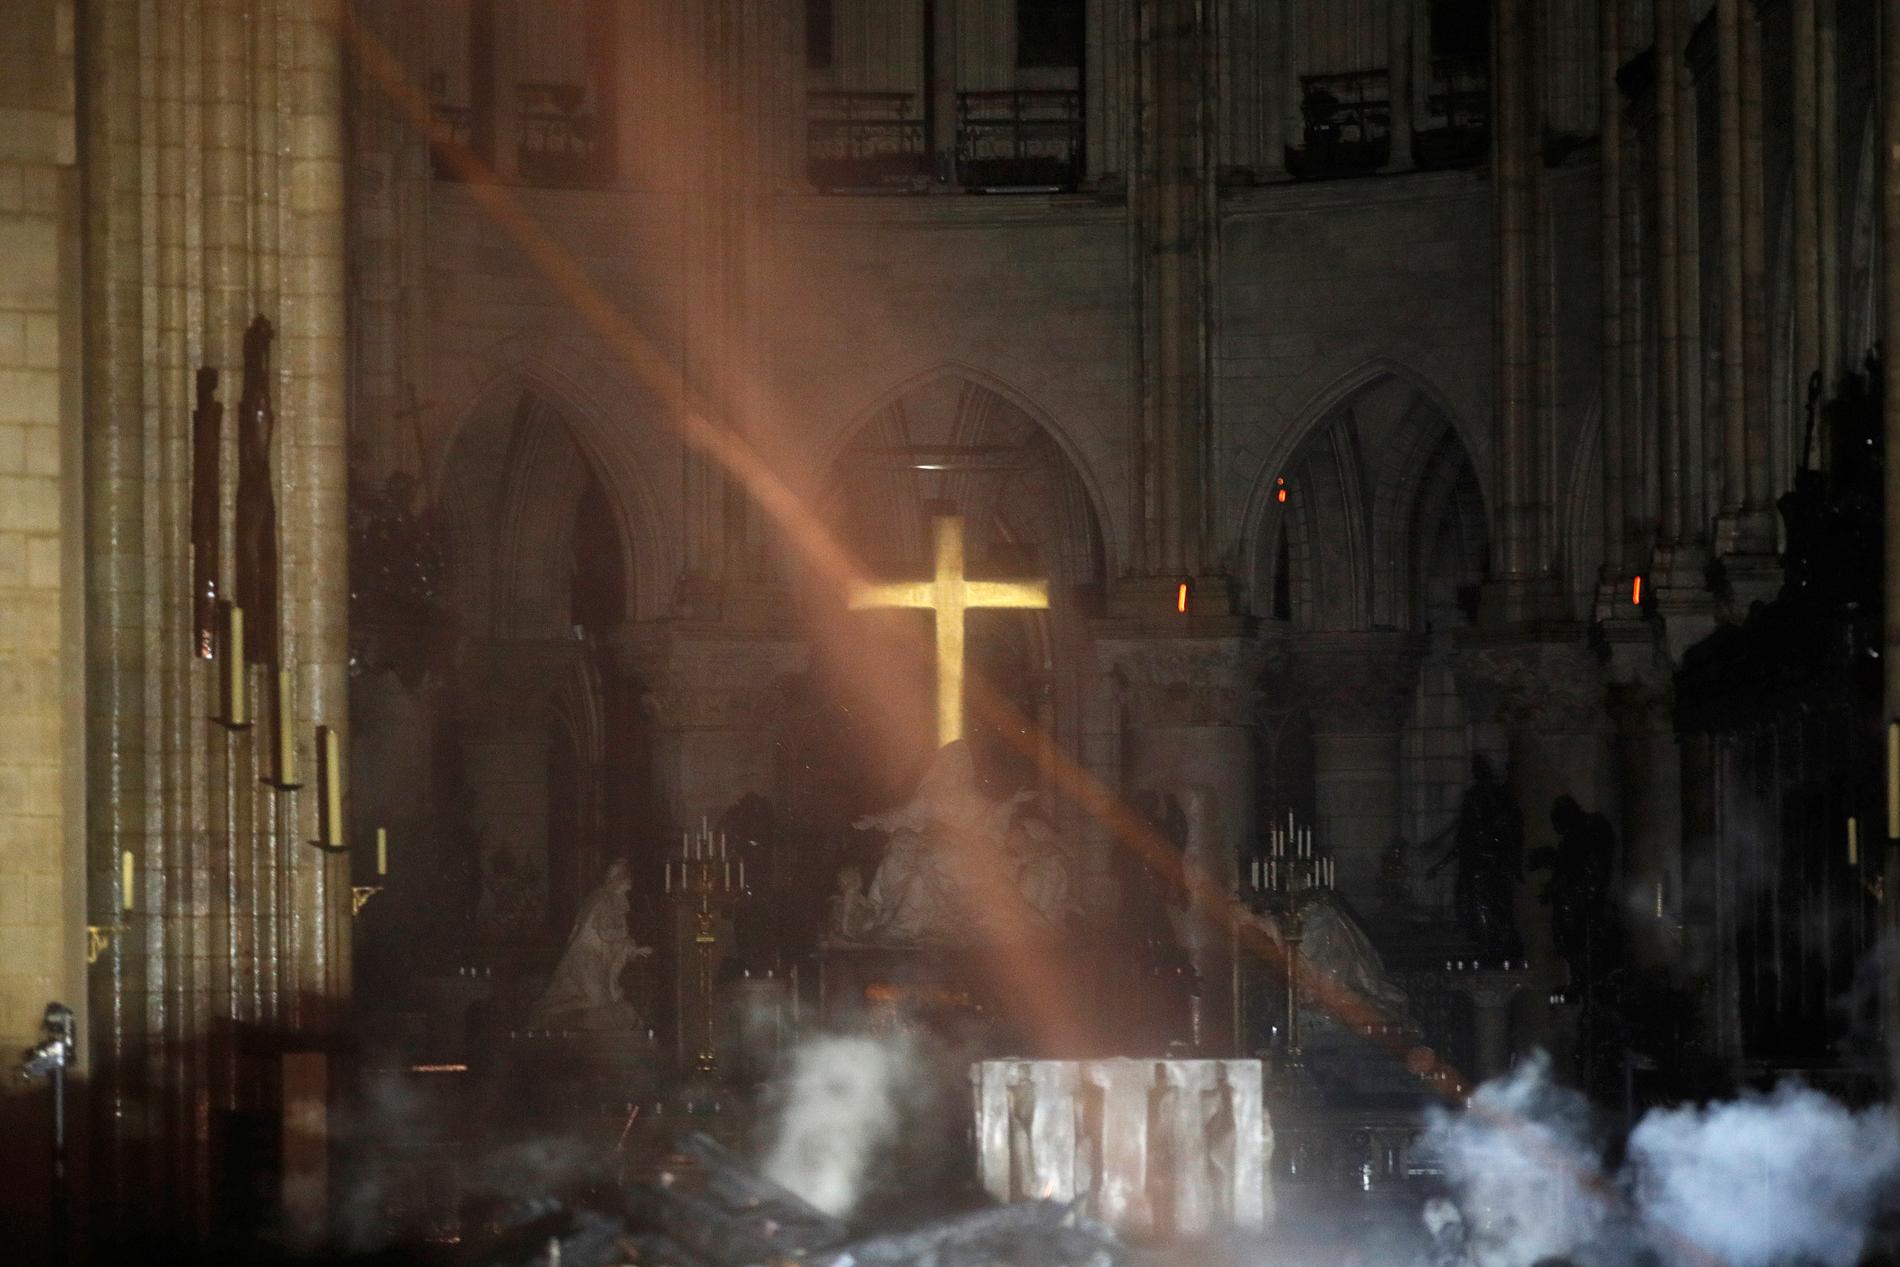 En av de första bilderna inifrån katedralen Notre-Dame efter branden. Rök syns framför altaret.